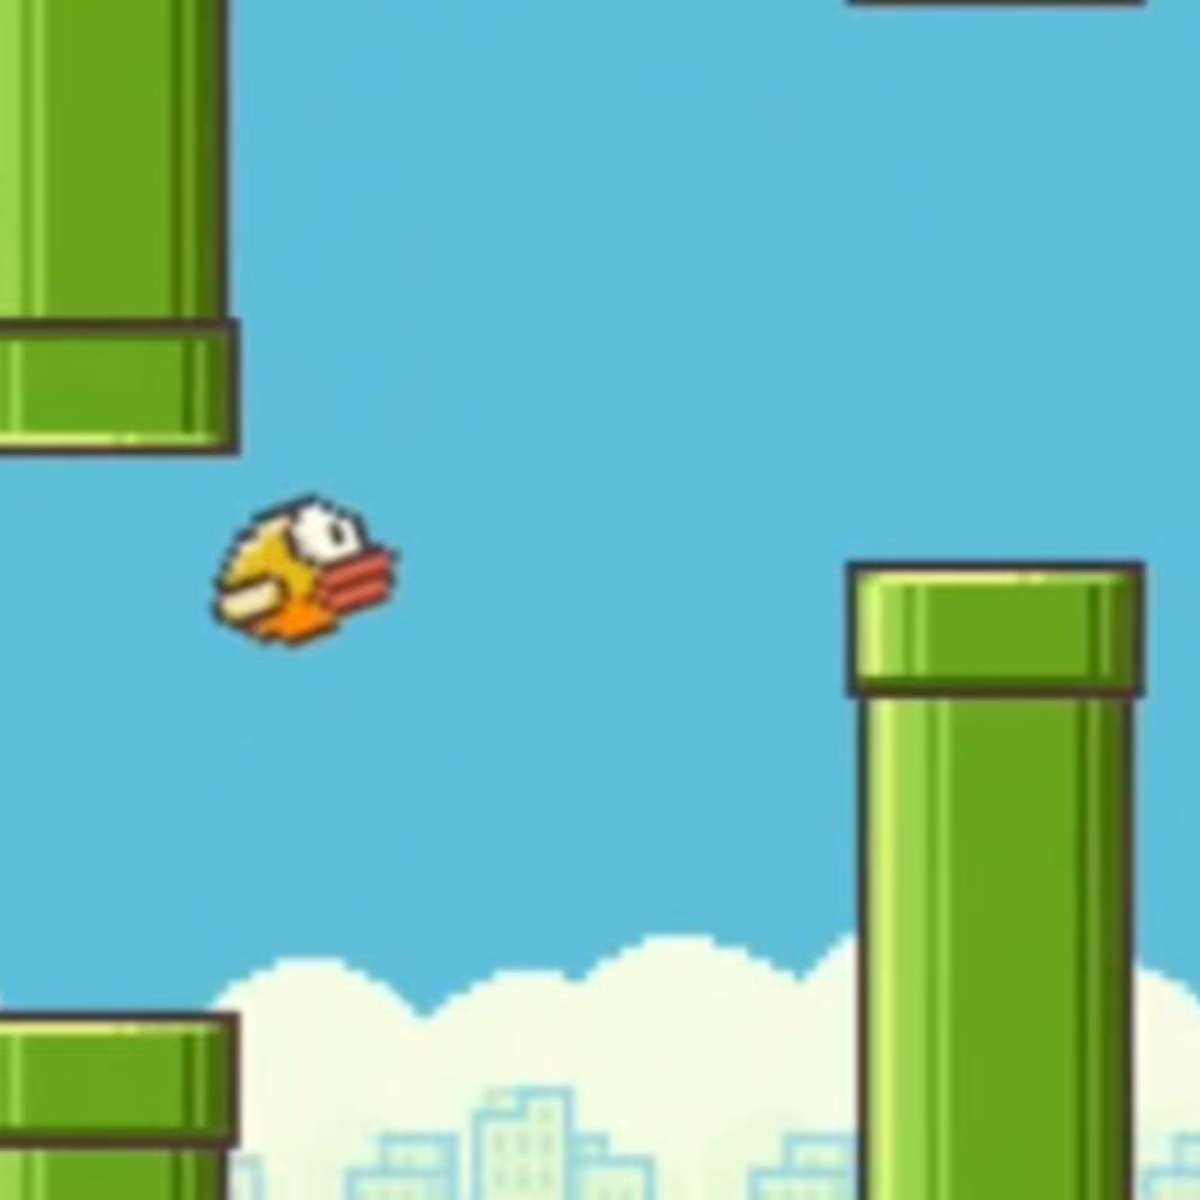 Celulares com Flappy Bird instalado se tornam itens de luxo no  